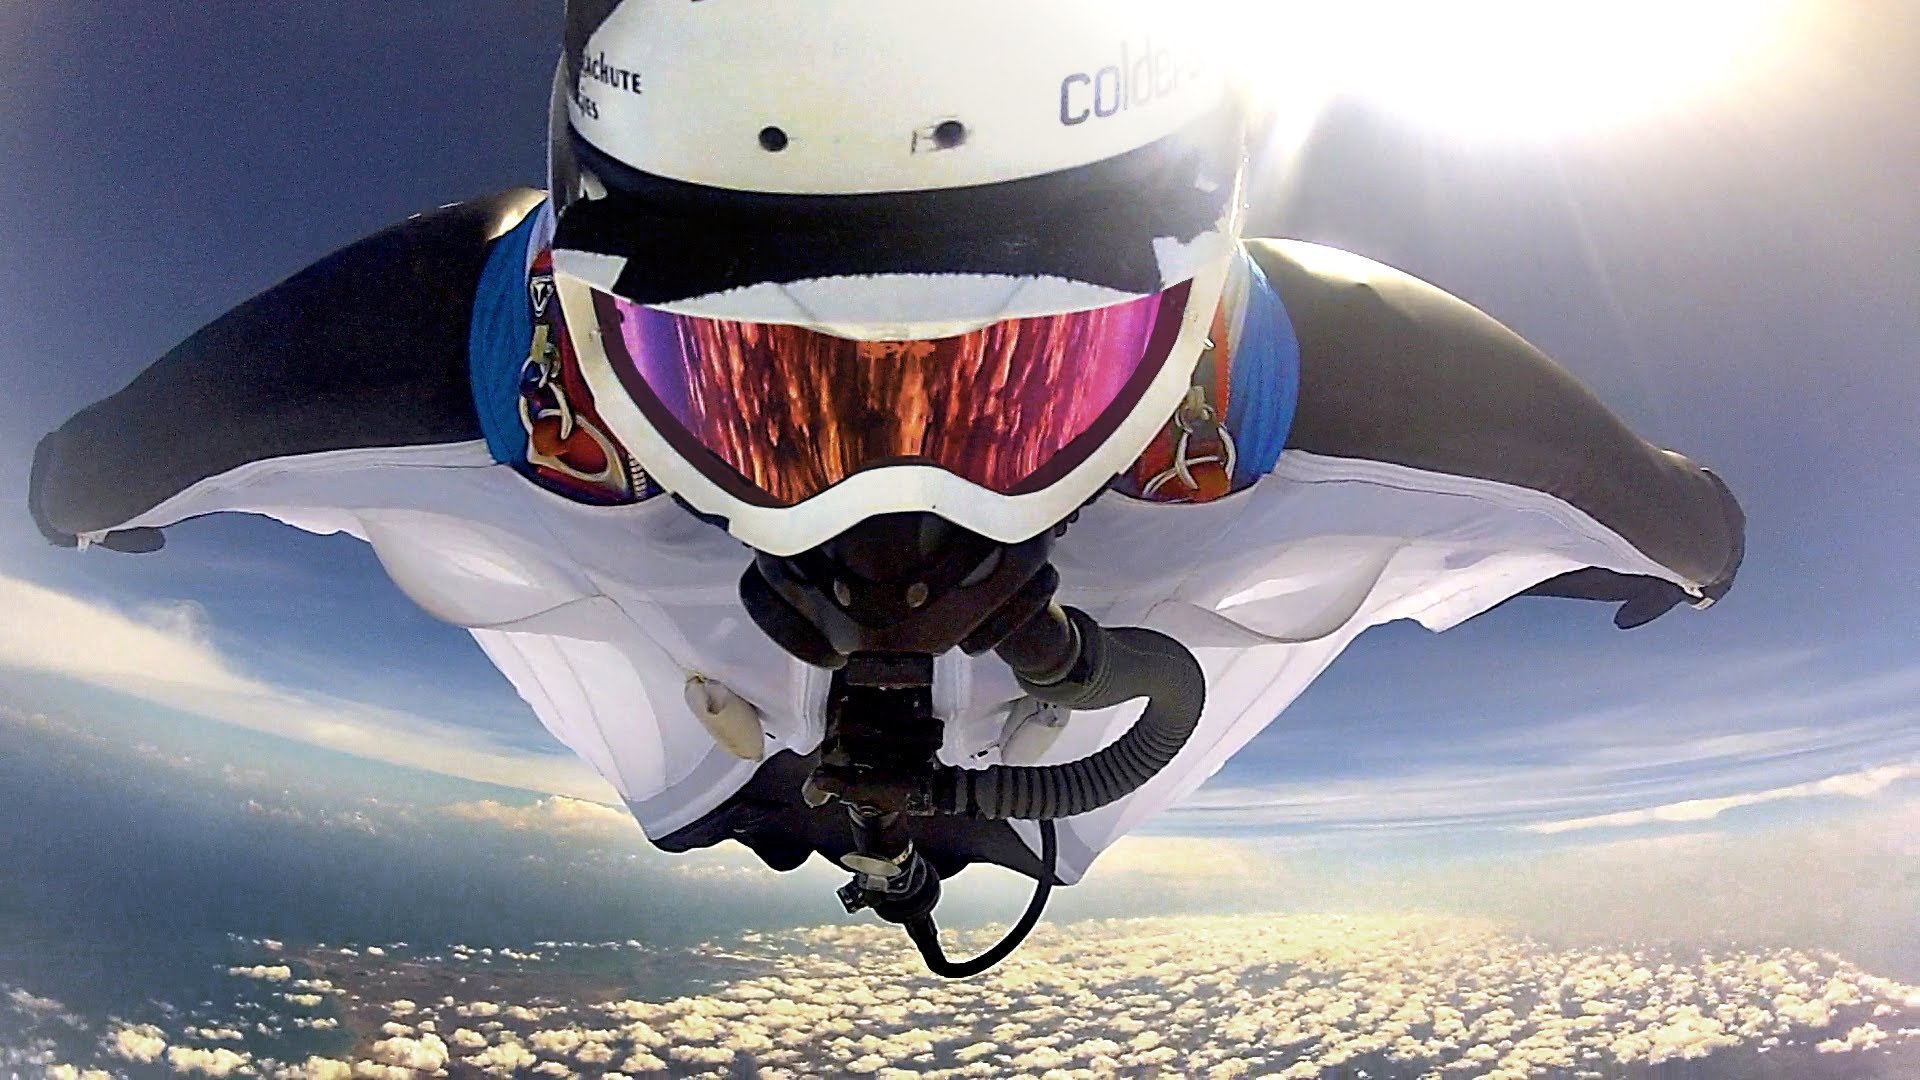 wingsuit, Parachute, Flying, Fly, Flight, Extreme, Birdman, Diving, Skydive, Skydiving, People, 1wingsuit, Suit, People Wallpaper